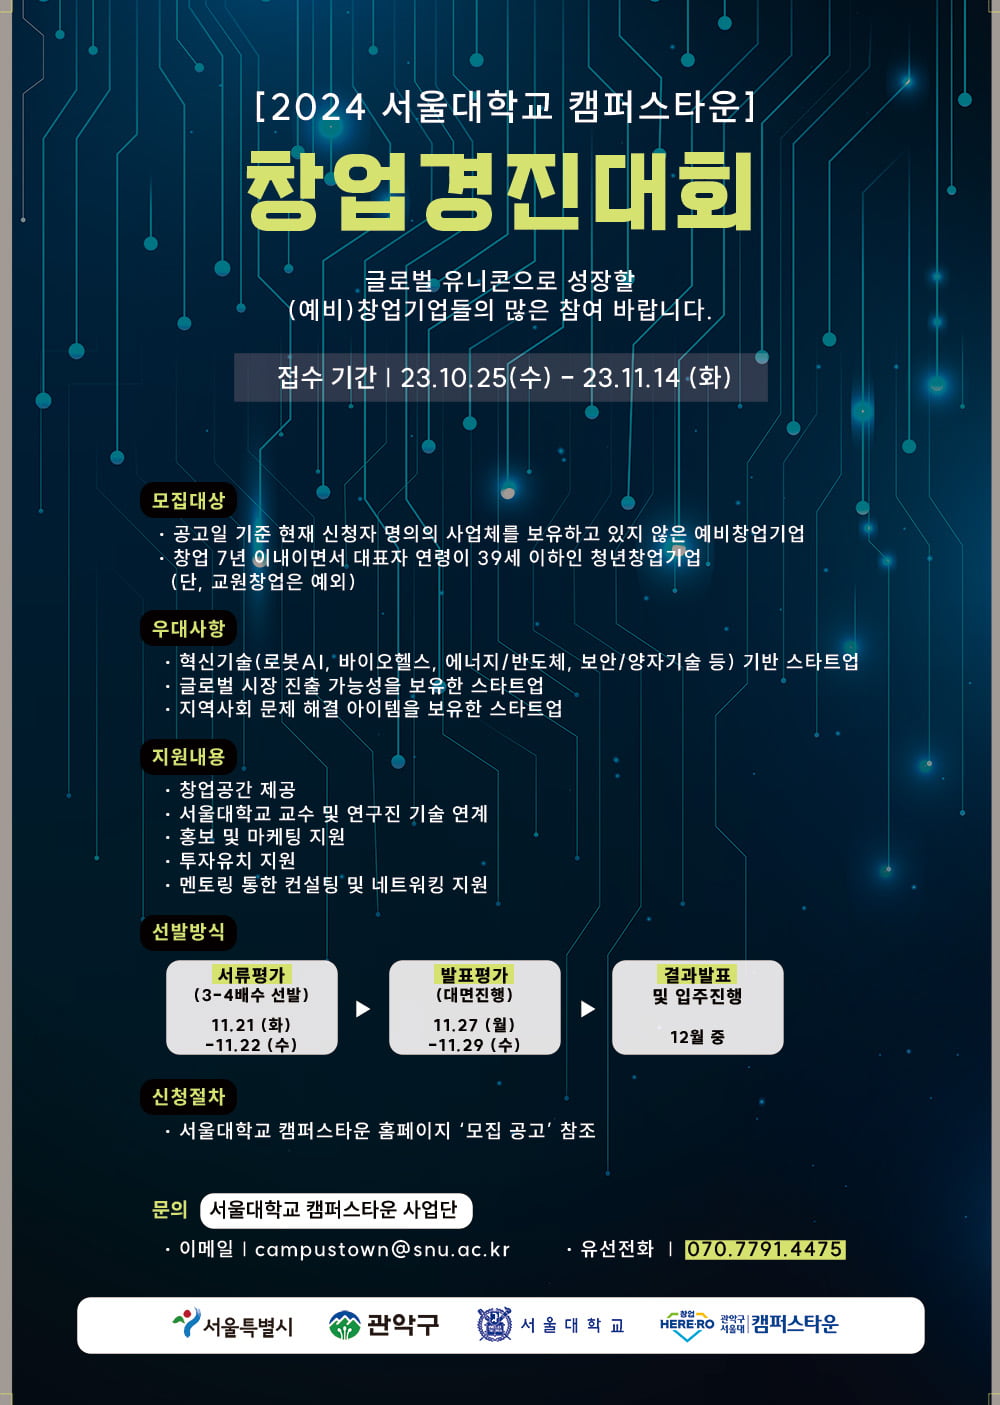 [2023 서울대학교 캠퍼스타운 스타트업 CEO] 스마트소비 커뮤니티 및 P2P 구매대행 중개 플랫폼을 개발하는 ‘리브하우’